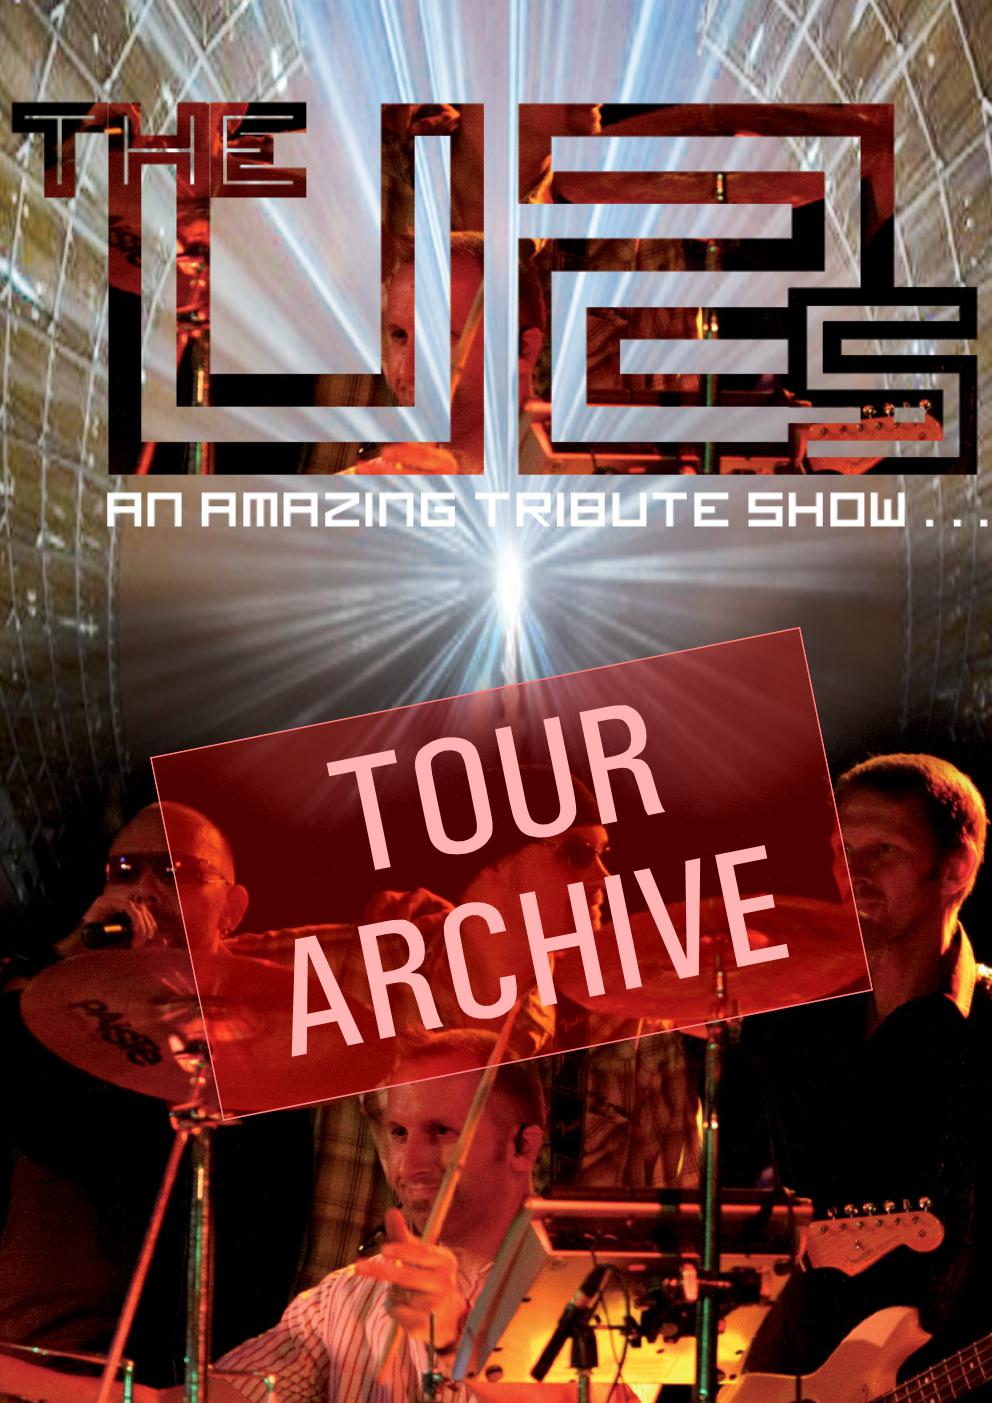 U2 tribute archive